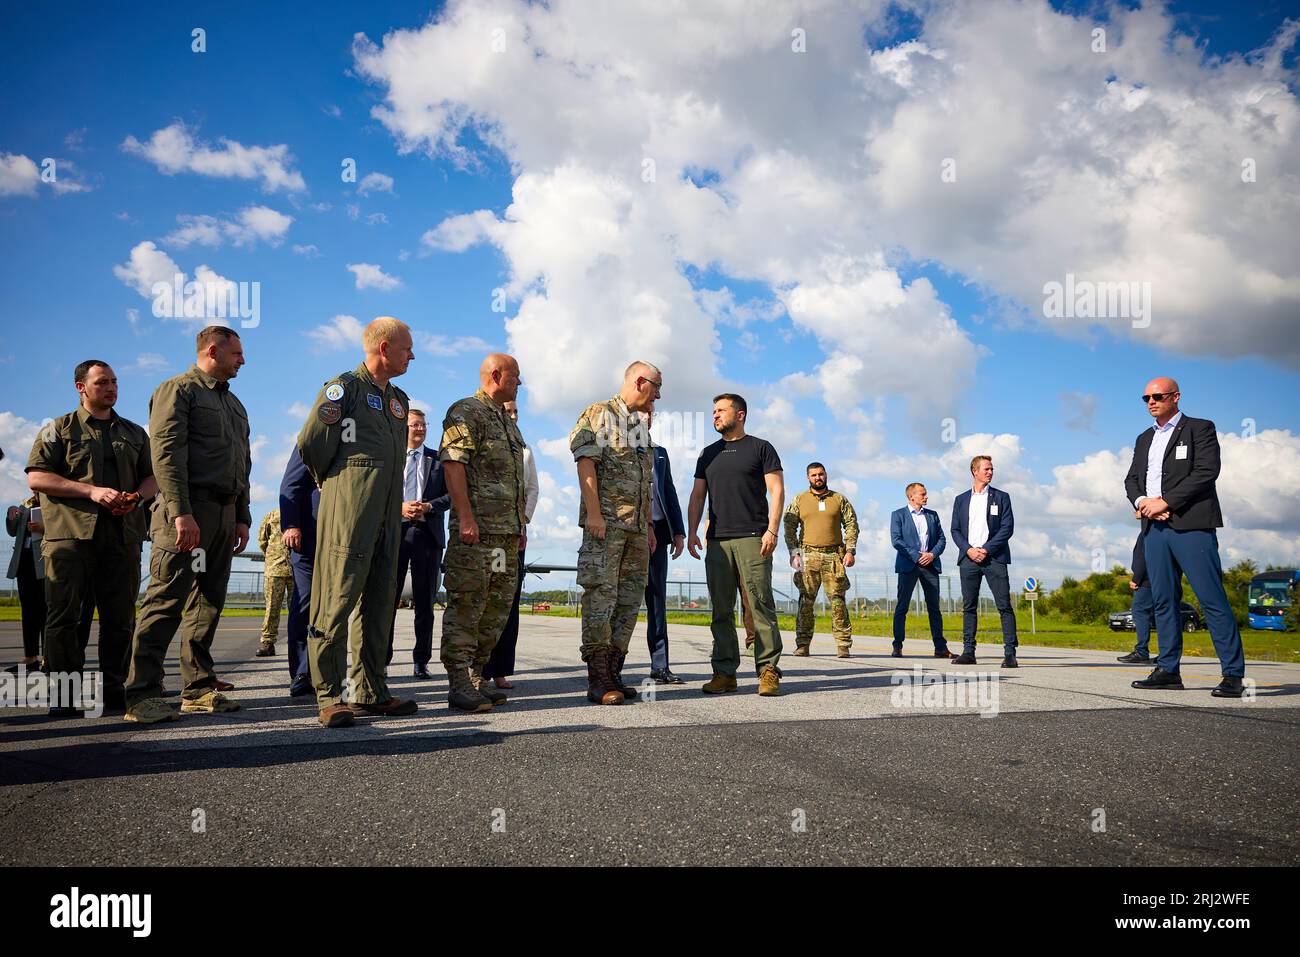 Au cours d'une visite de travail au Royaume du Danemark, le président ukrainien, Volodymyr Zelensky, a visité la base aérienne Fighter Wing Skrydstrup de la Royal Danish Air Force. Accompagné du Premier ministre danois mette Frederiksen et du Royal Air Force Command, le Chef de l’État s’est familiarisé avec les caractéristiques techniques des avions F-16 Fighting Falcon et le programme de formation des pilotes ukrainiens à bord de ces avions. Il a parlé avec des pilotes ukrainiens qui suivent une formation sur des F-16 pour protéger le ciel ukrainien. Banque D'Images